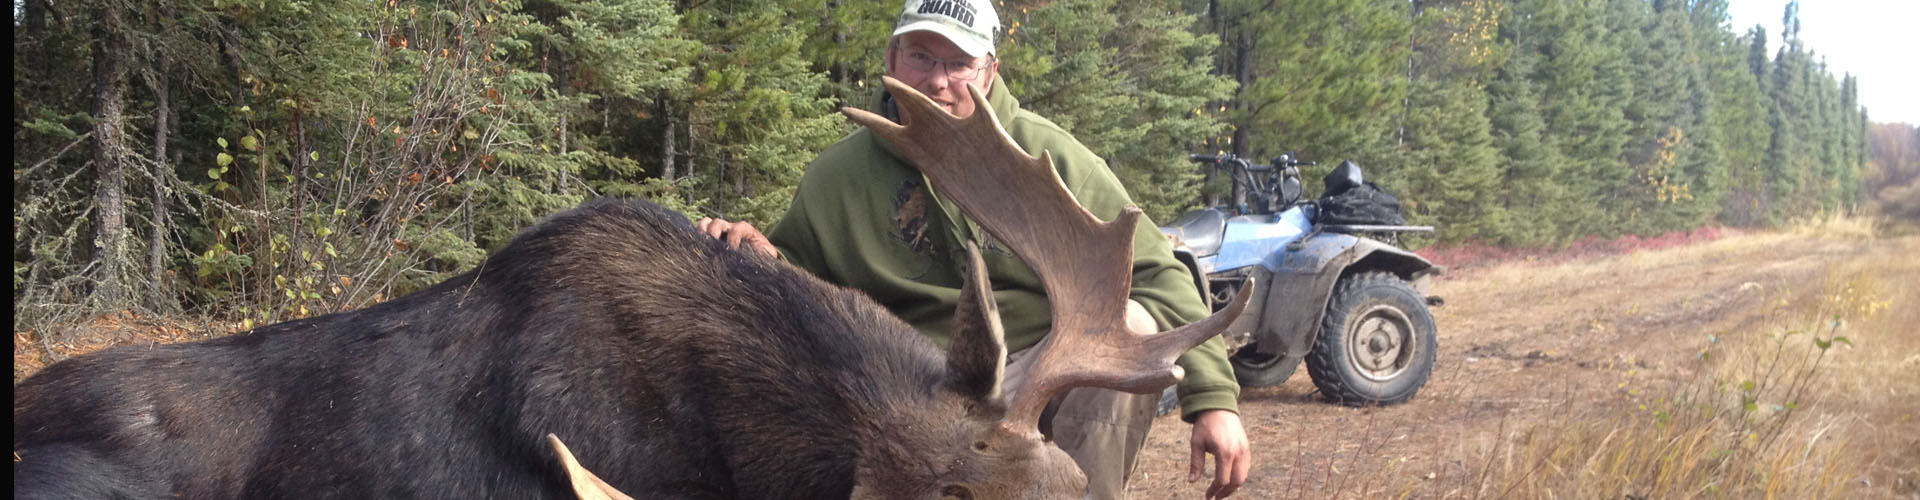 alberta moose hunting